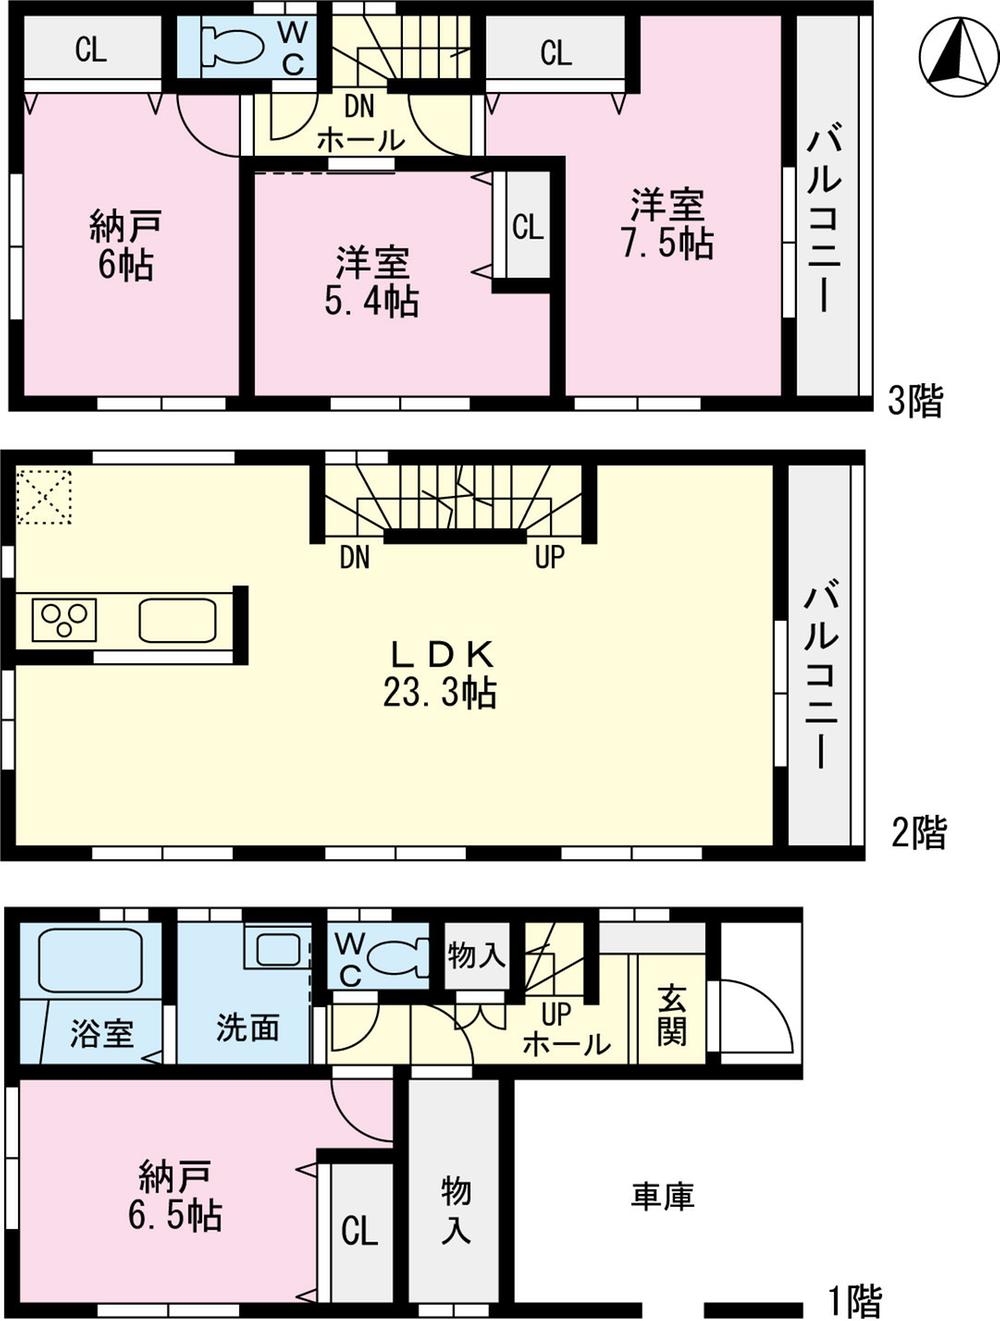 Floor plan. 39,800,000 yen, 2LDK + 2S (storeroom), Land area 69.61 sq m , Building area 119.88 sq m